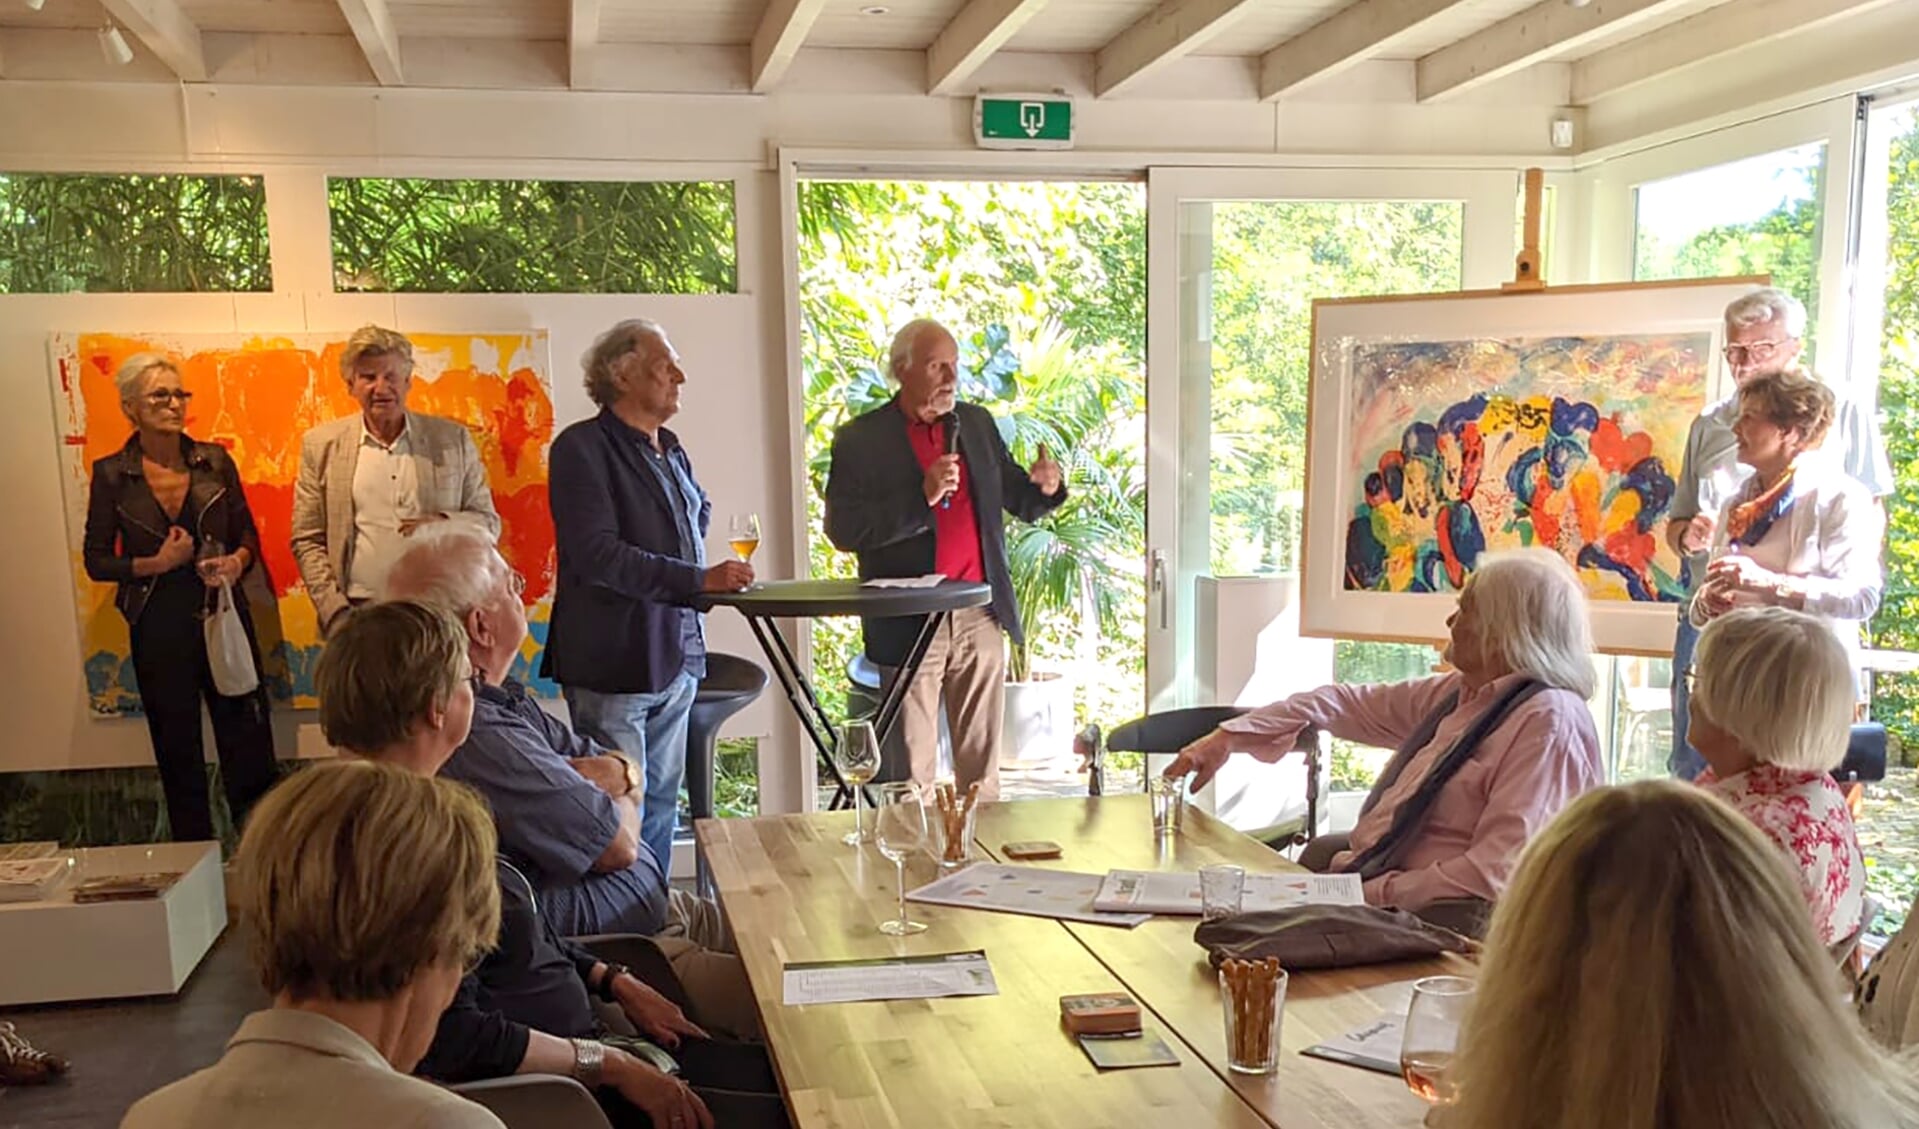 Veel belangstelling voor de opening van de expositie van Jan Cremer bij Kik. Voorzitter René Hoijtink praat met kunstenaar Cremer over zijn werk. Foto: Kyra Broshuis